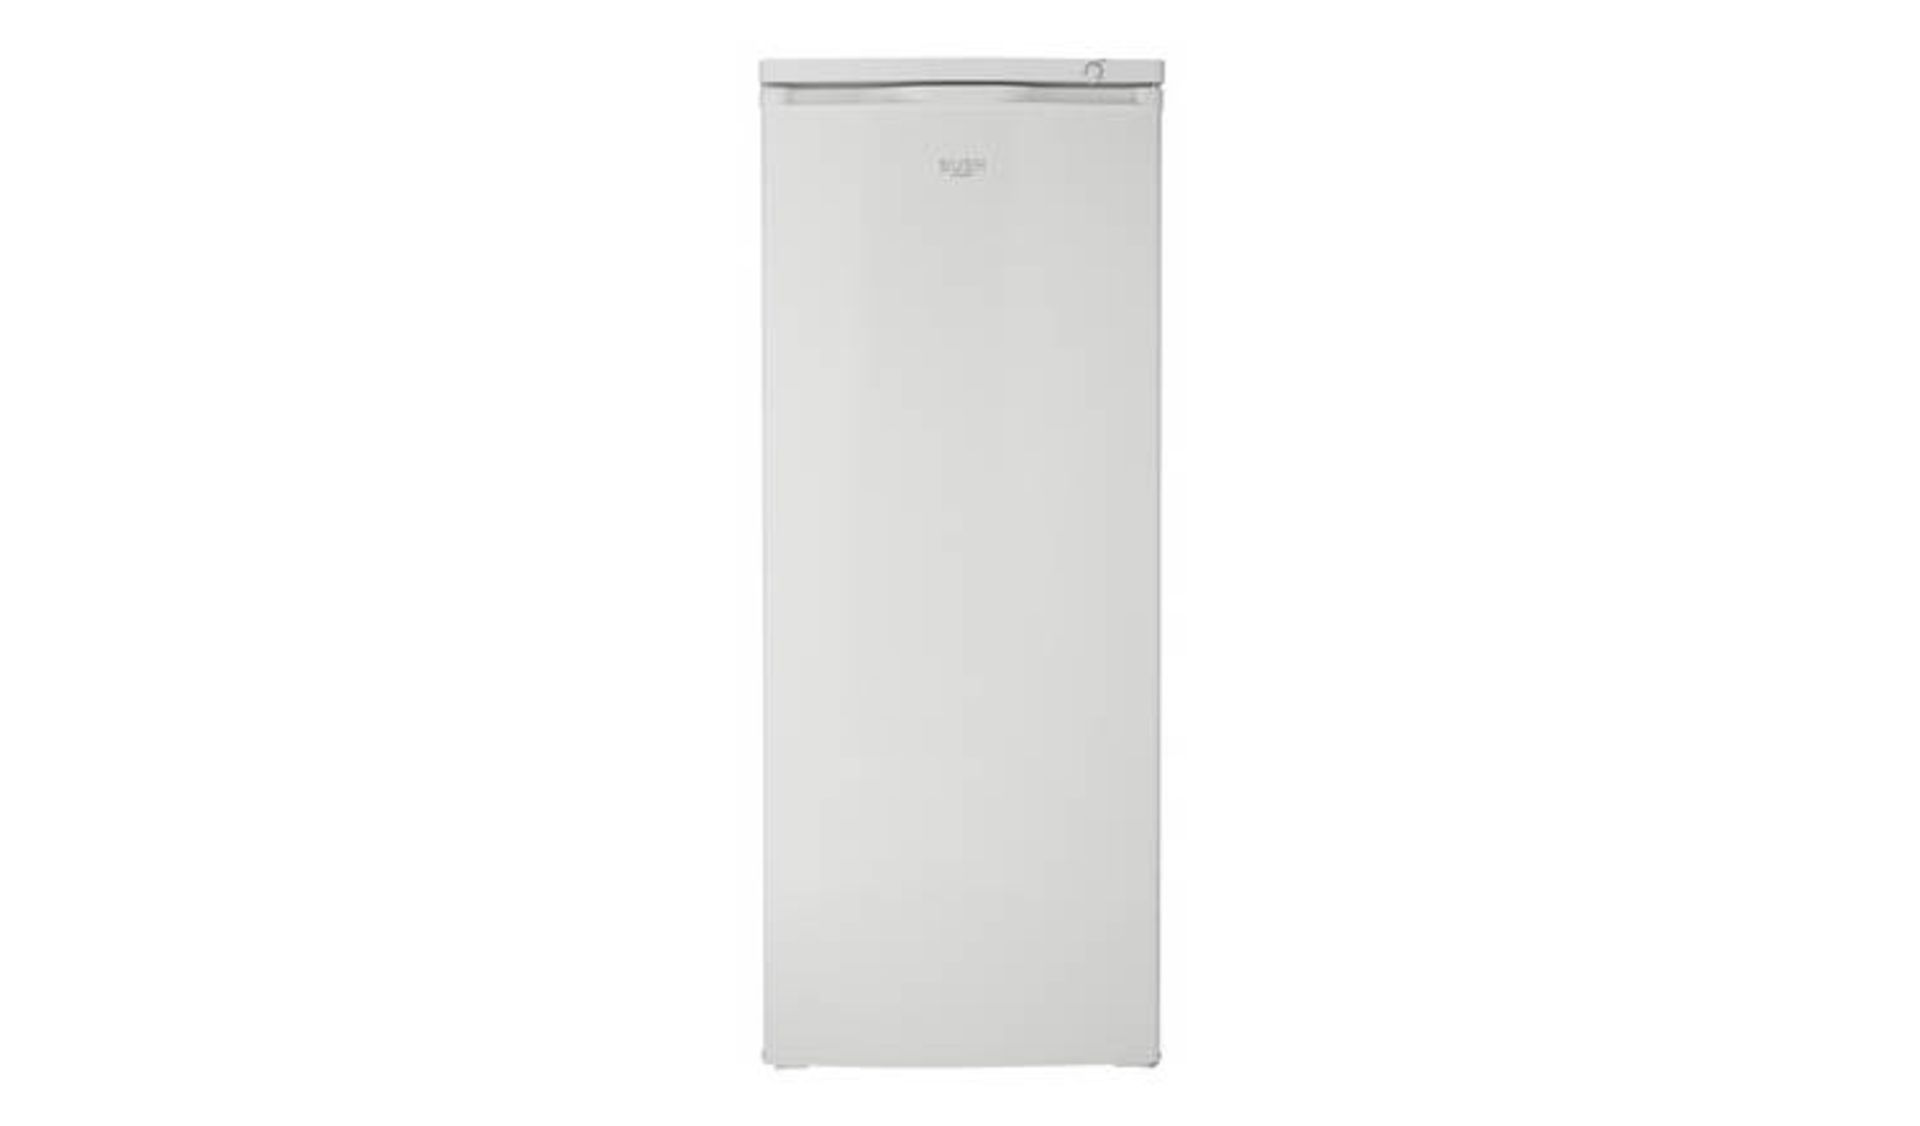 + VAT Grade A/B Bush M55TFW20 Tall Freezer - 163 Litre Capacity - Six Storage Compartments - A+